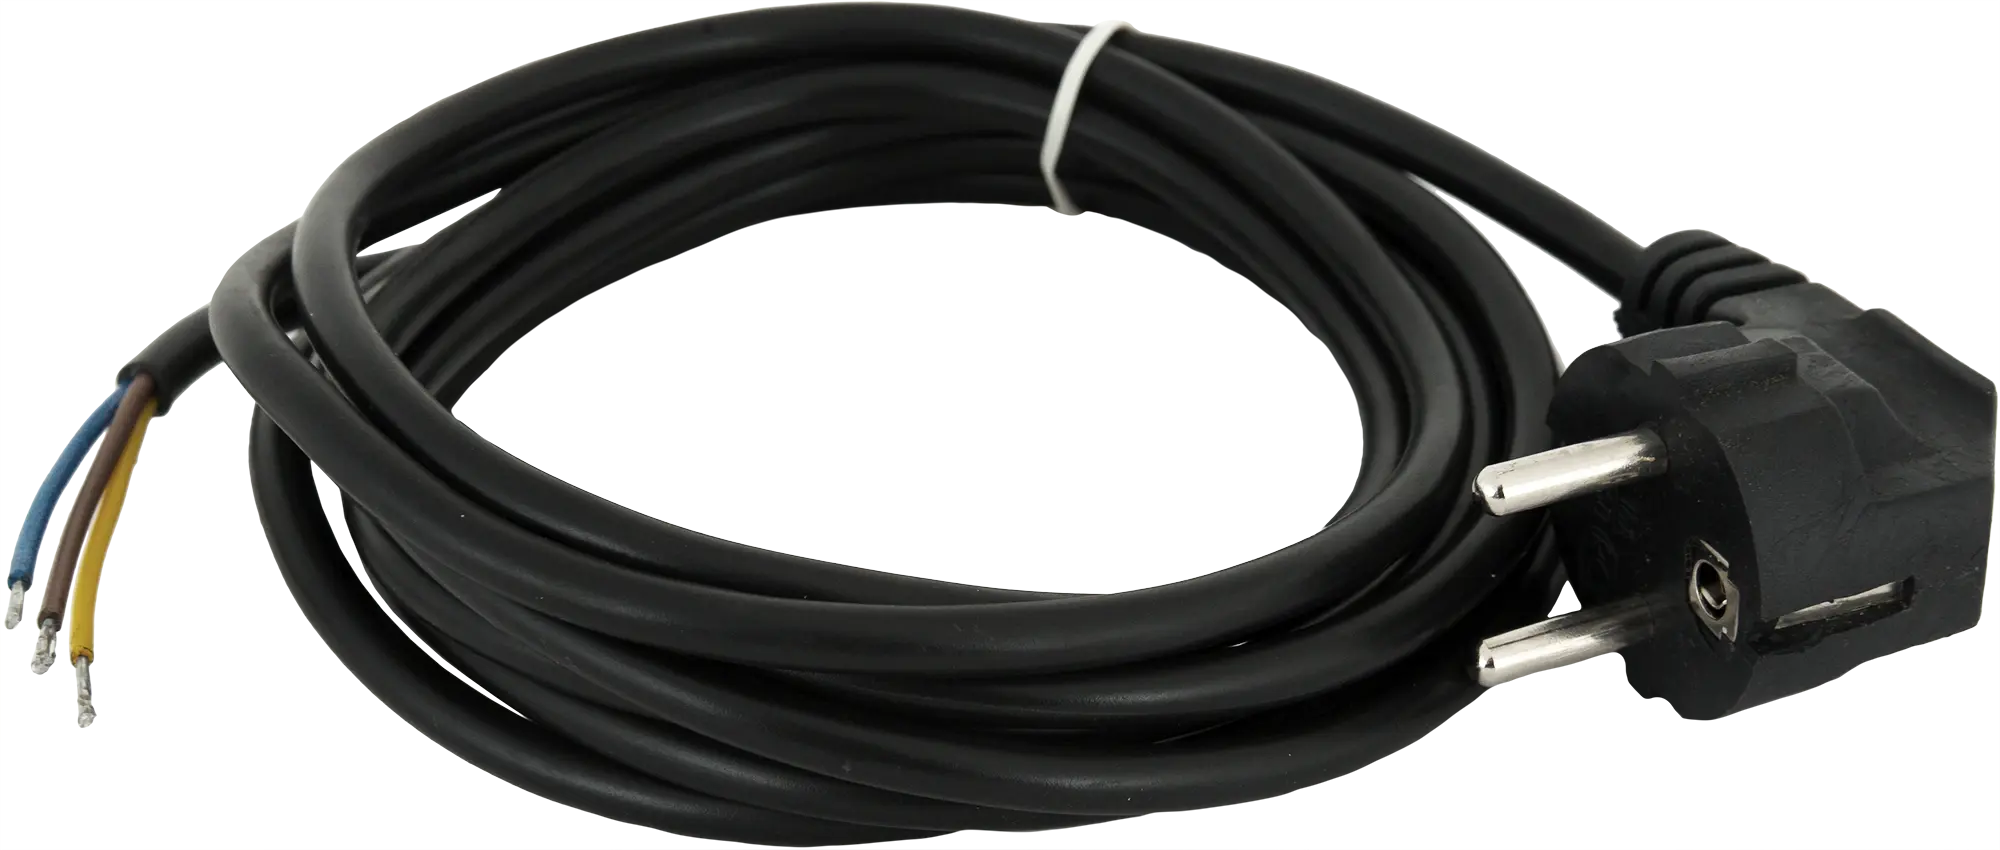 Шнур сетевой с заземлением 10 A 1.5 м цвет чёрный шнур сетевой с заземлением 10 a 1 5 м цвет чёрный